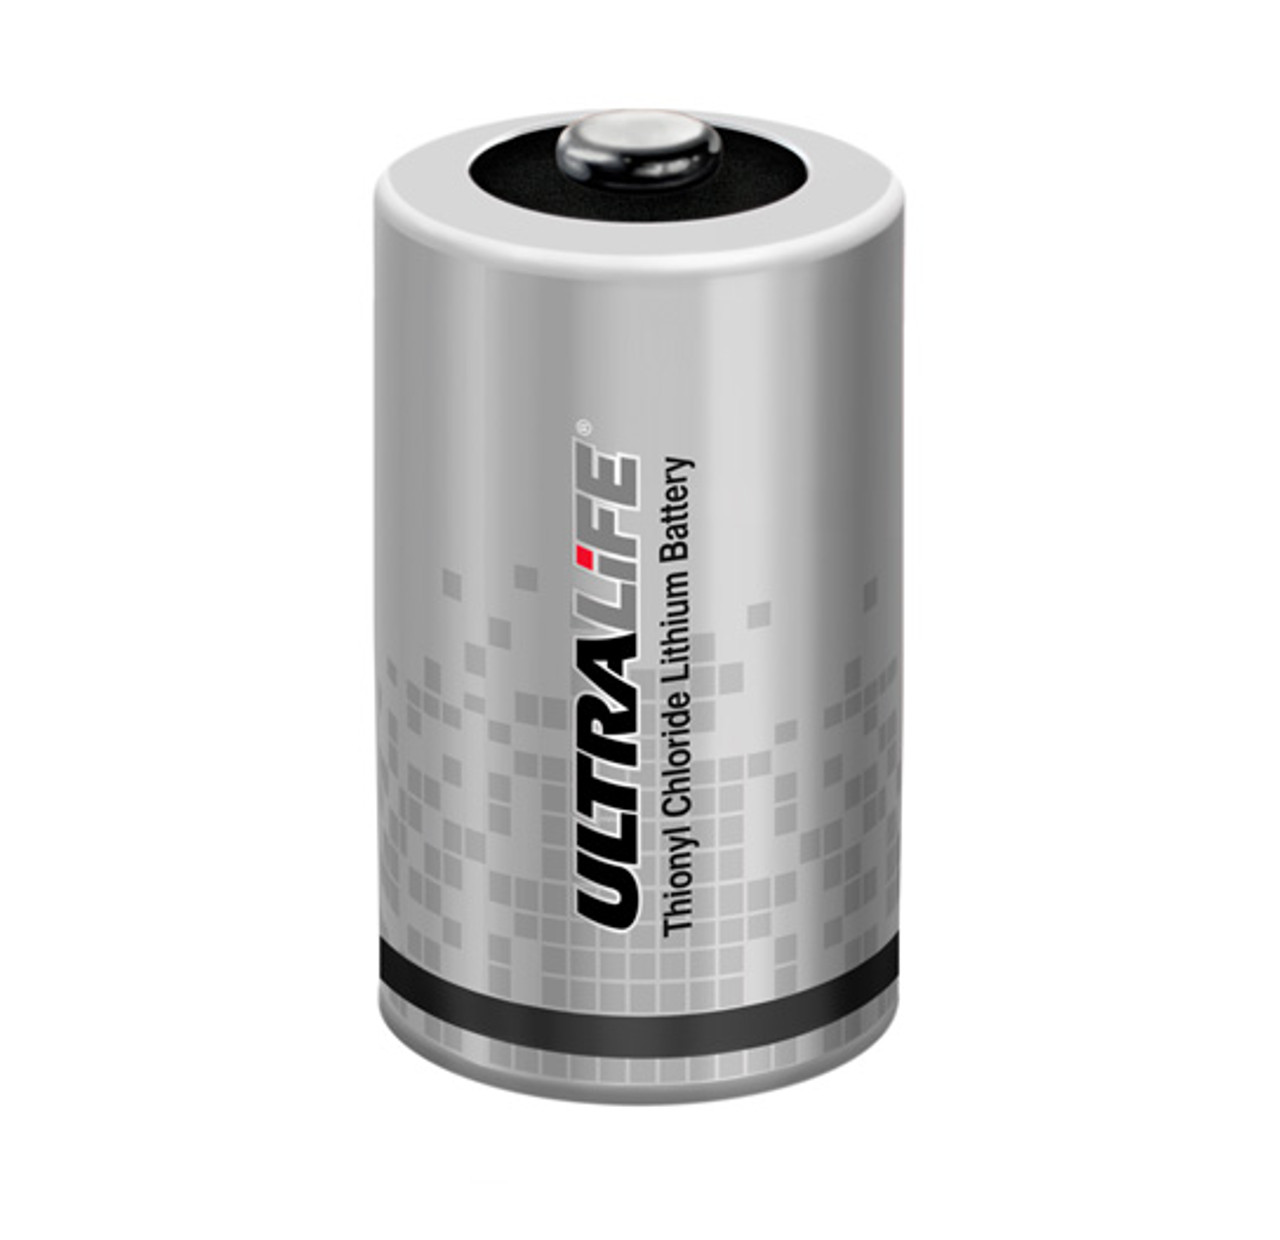 Ultralife ER34615 Battery - 3.6V D Cell Lithium